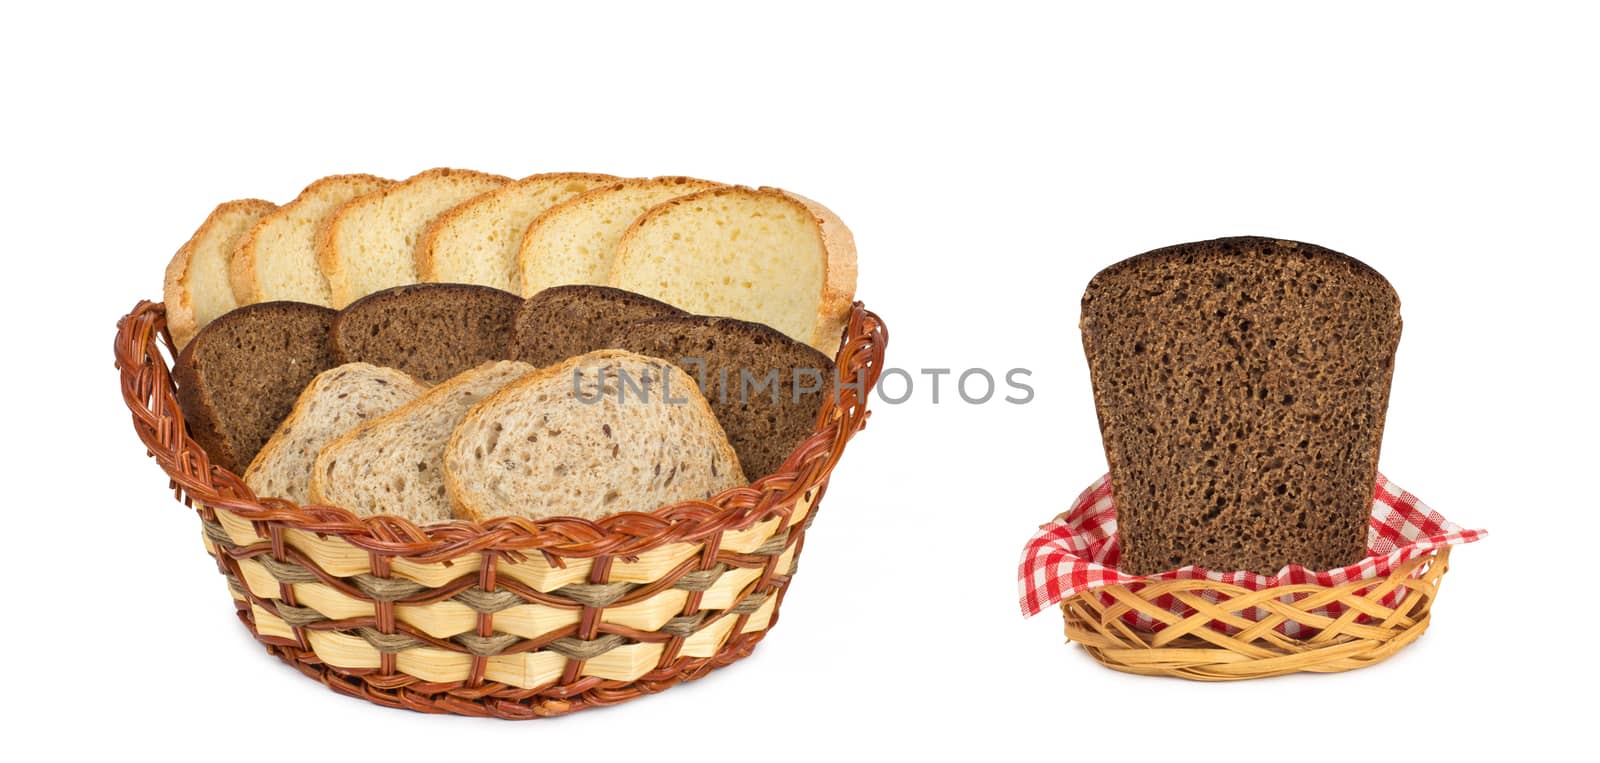 bread in baskets by ozaiachin